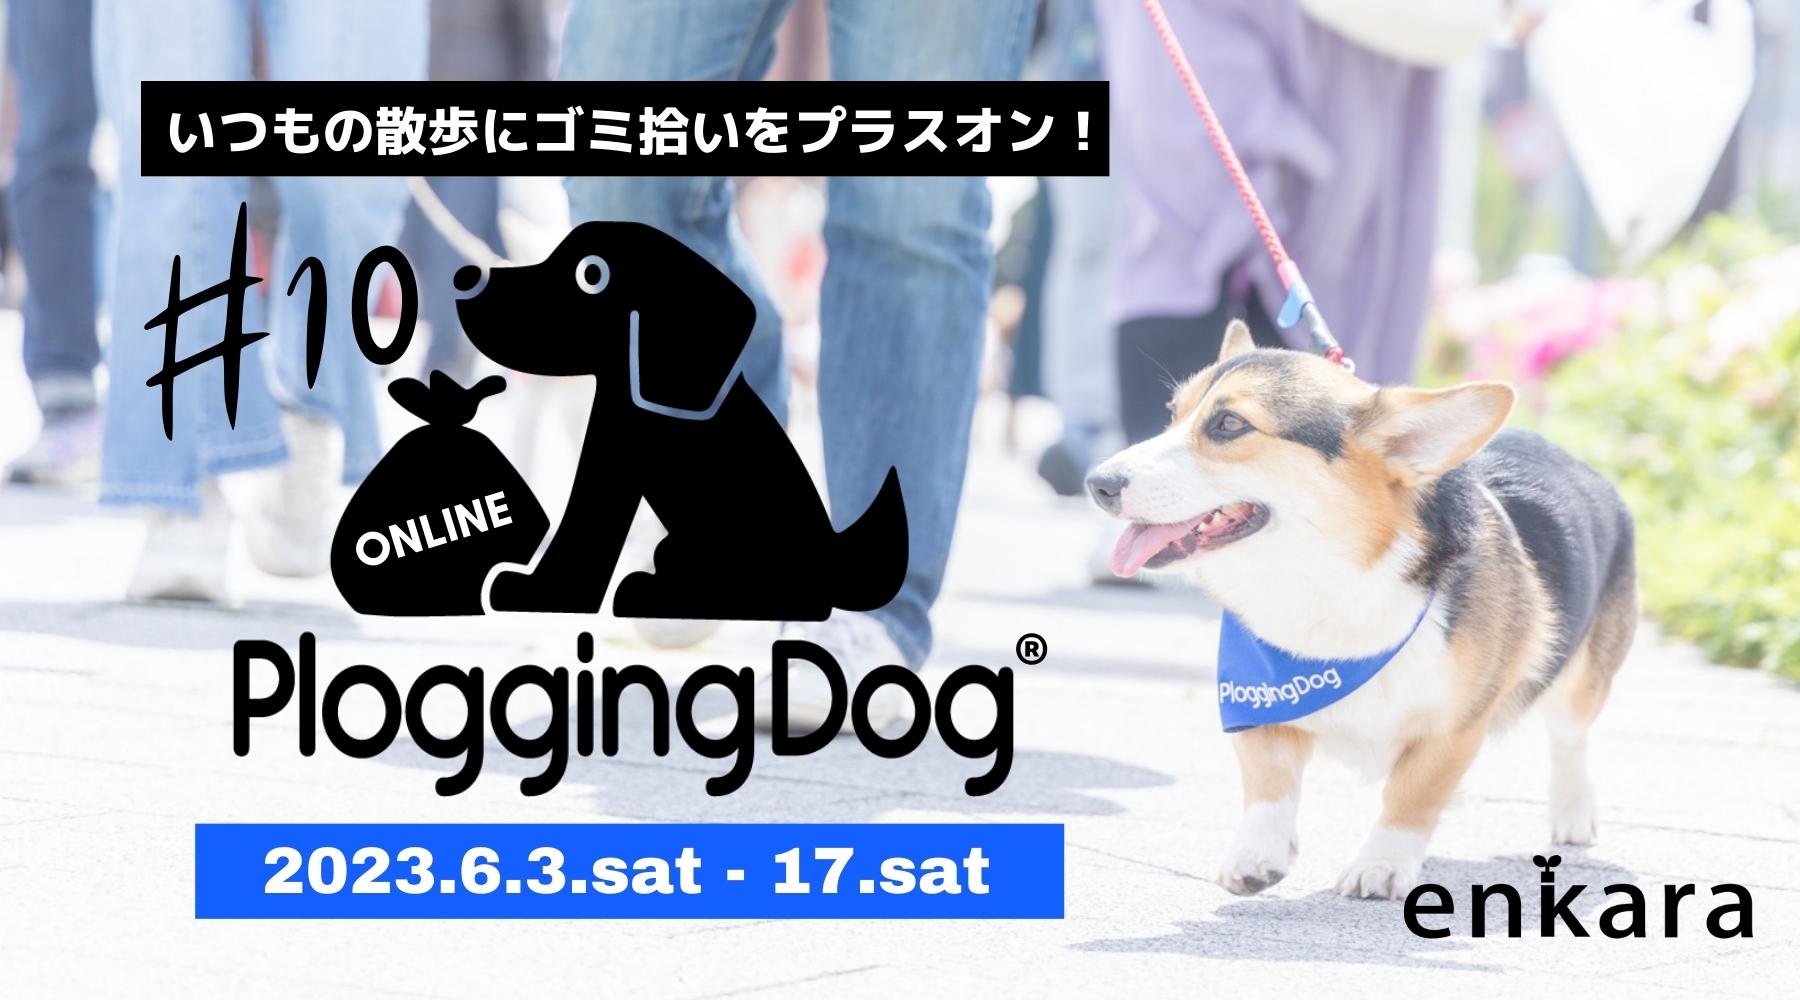 PloggingDog愛犬とゴミ拾いイベント10